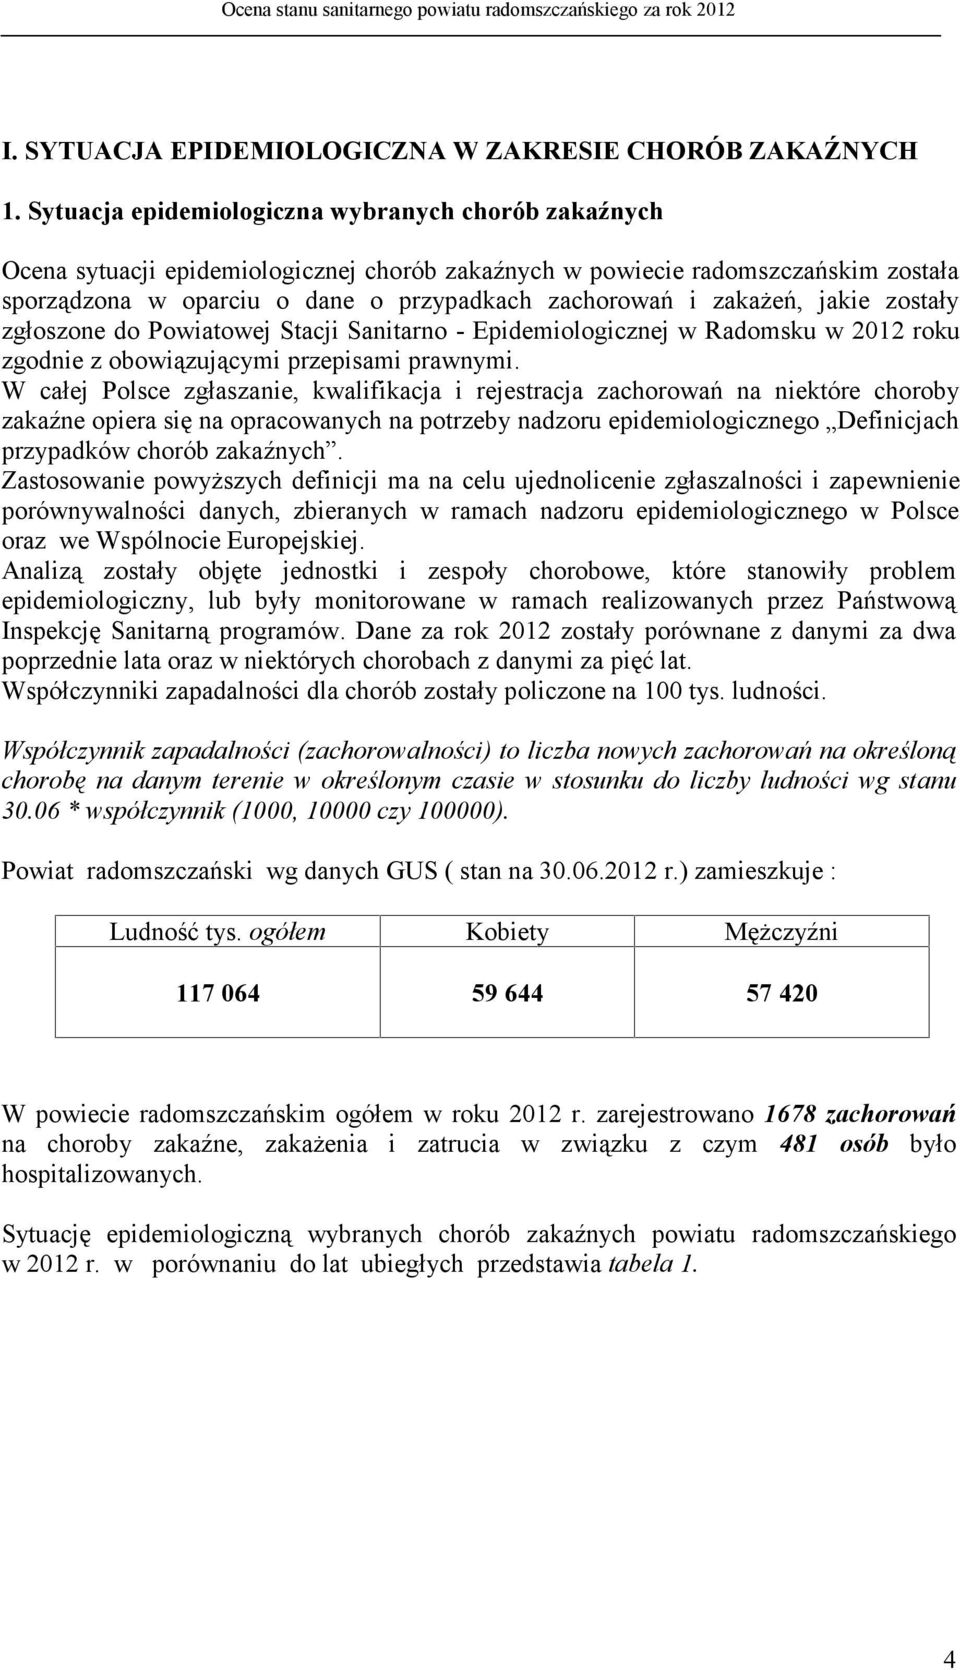 zakażeń, jakie zostały zgłoszone do Powiatowej Stacji Sanitarno - Epidemiologicznej w Radomsku w 2012 roku zgodnie z obowiązującymi przepisami prawnymi.